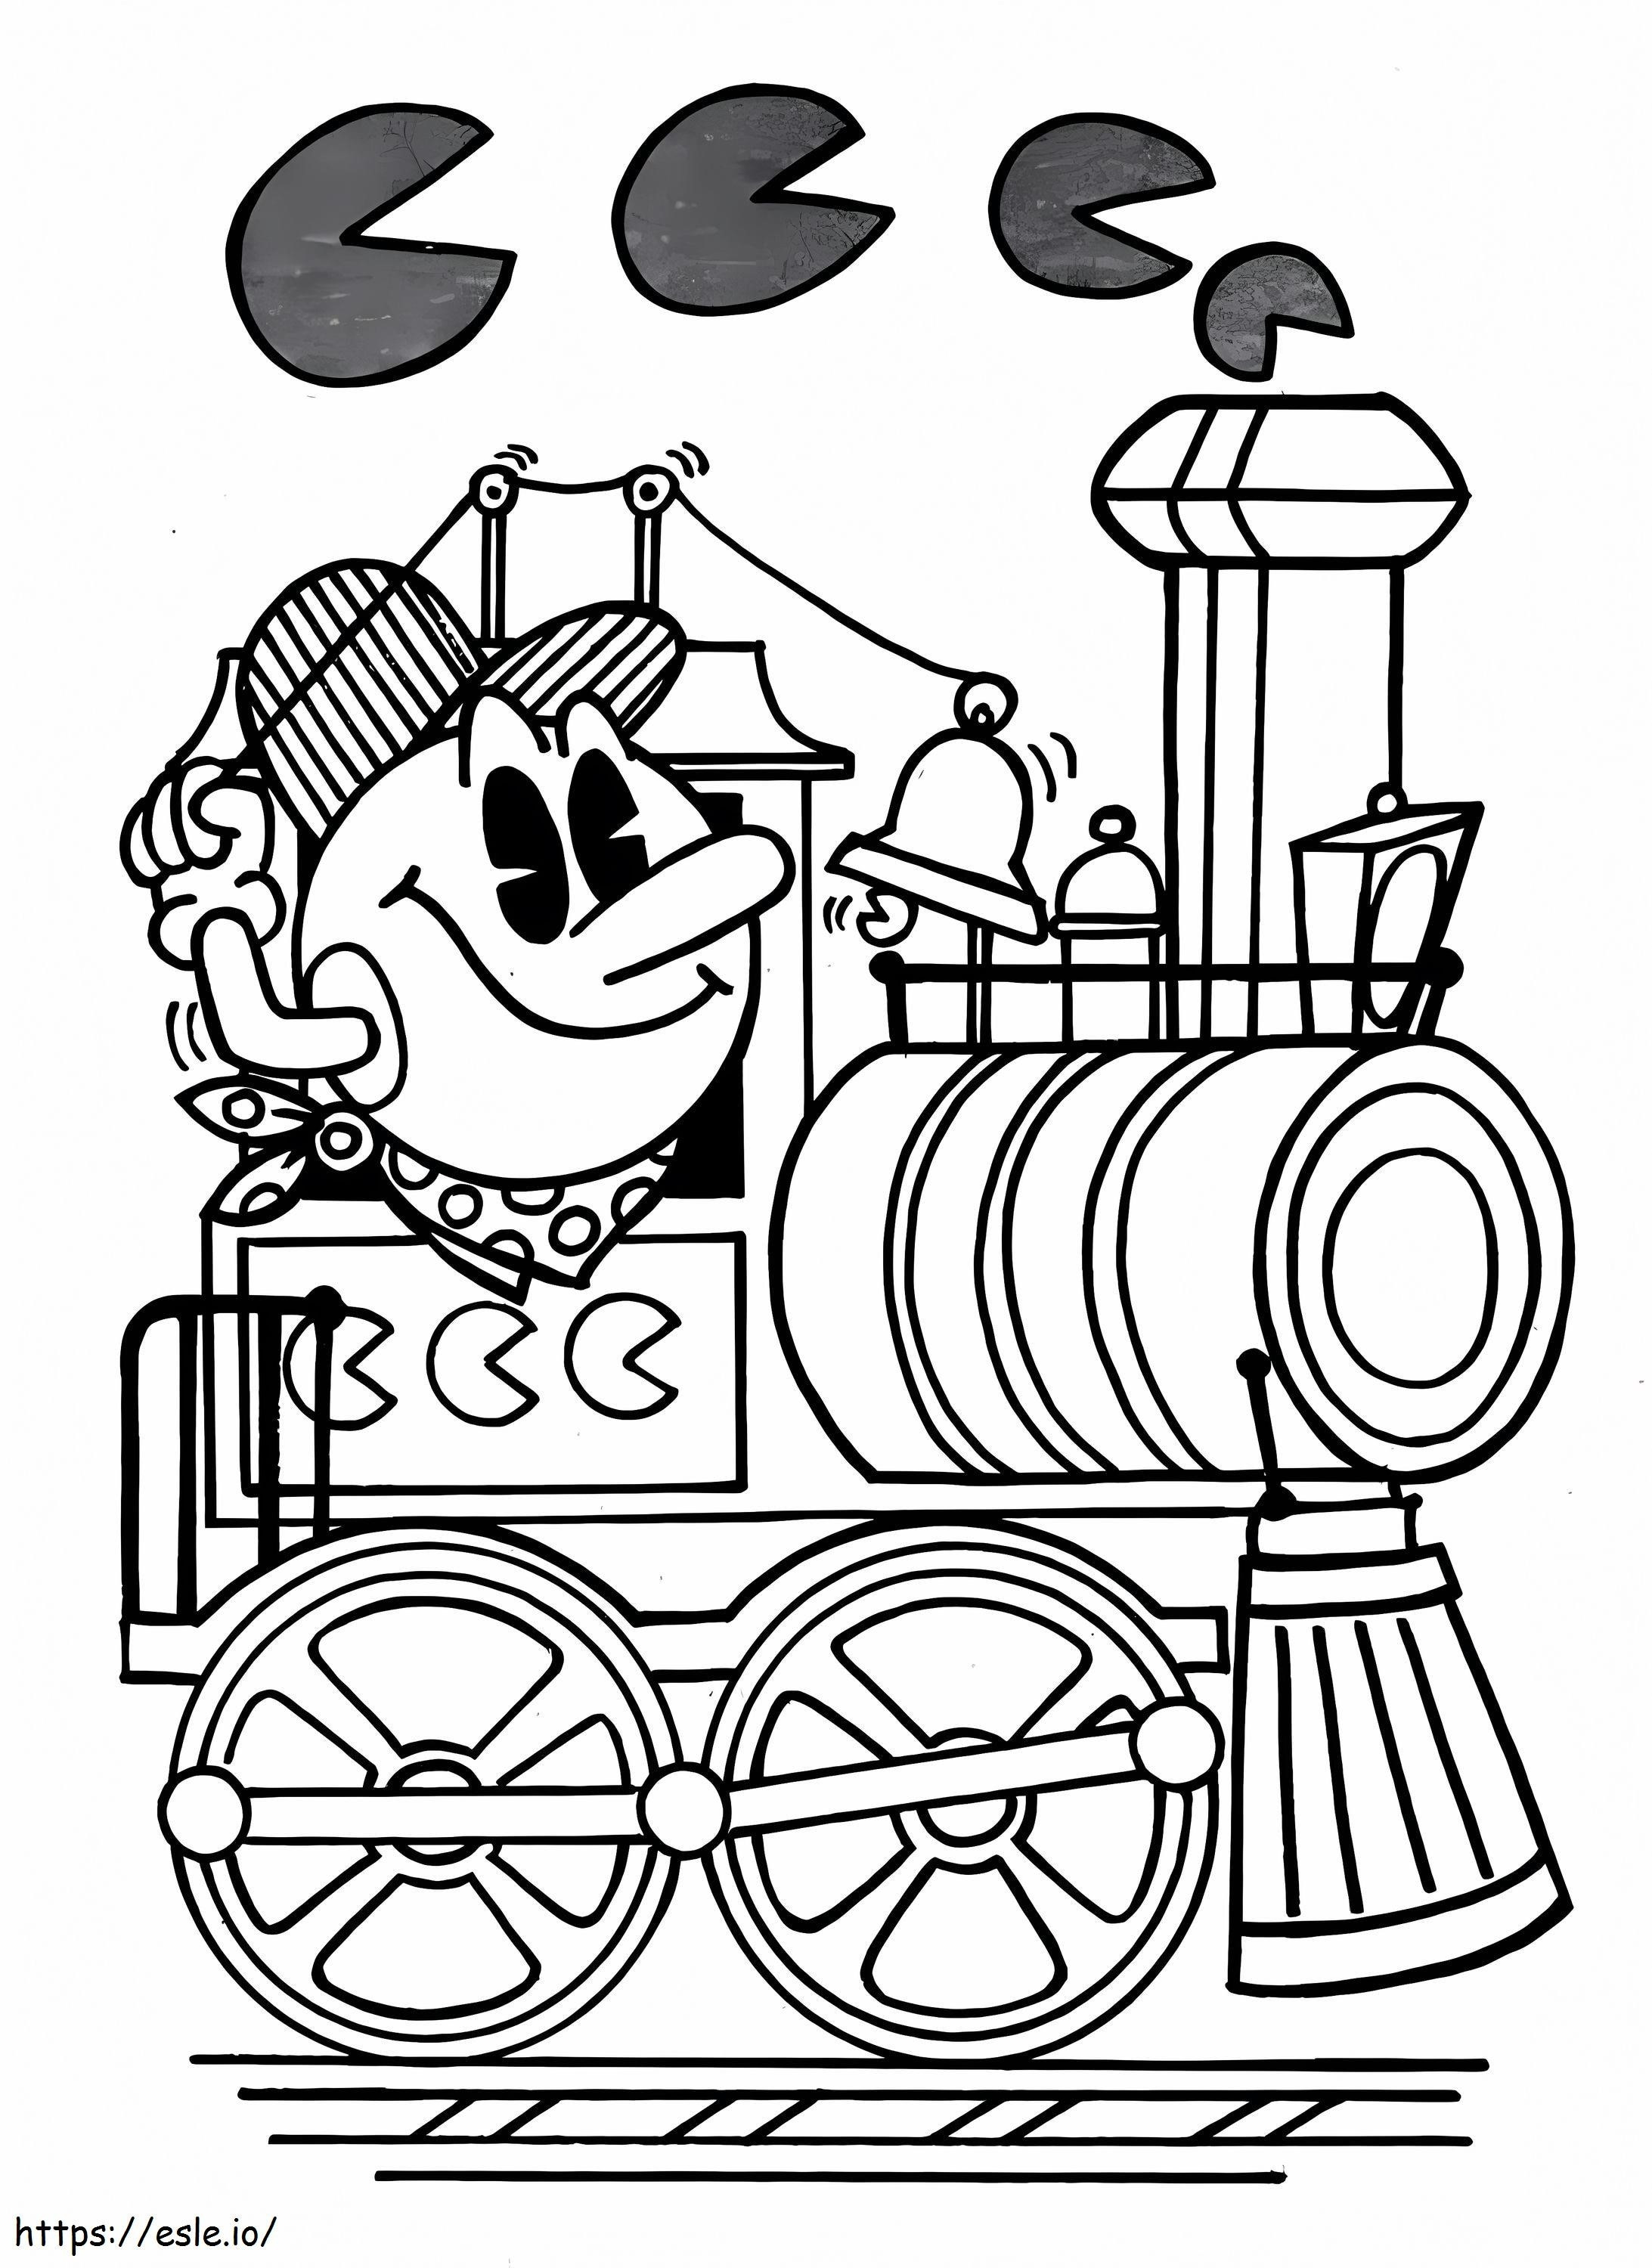 Pacman im Zug ausmalbilder